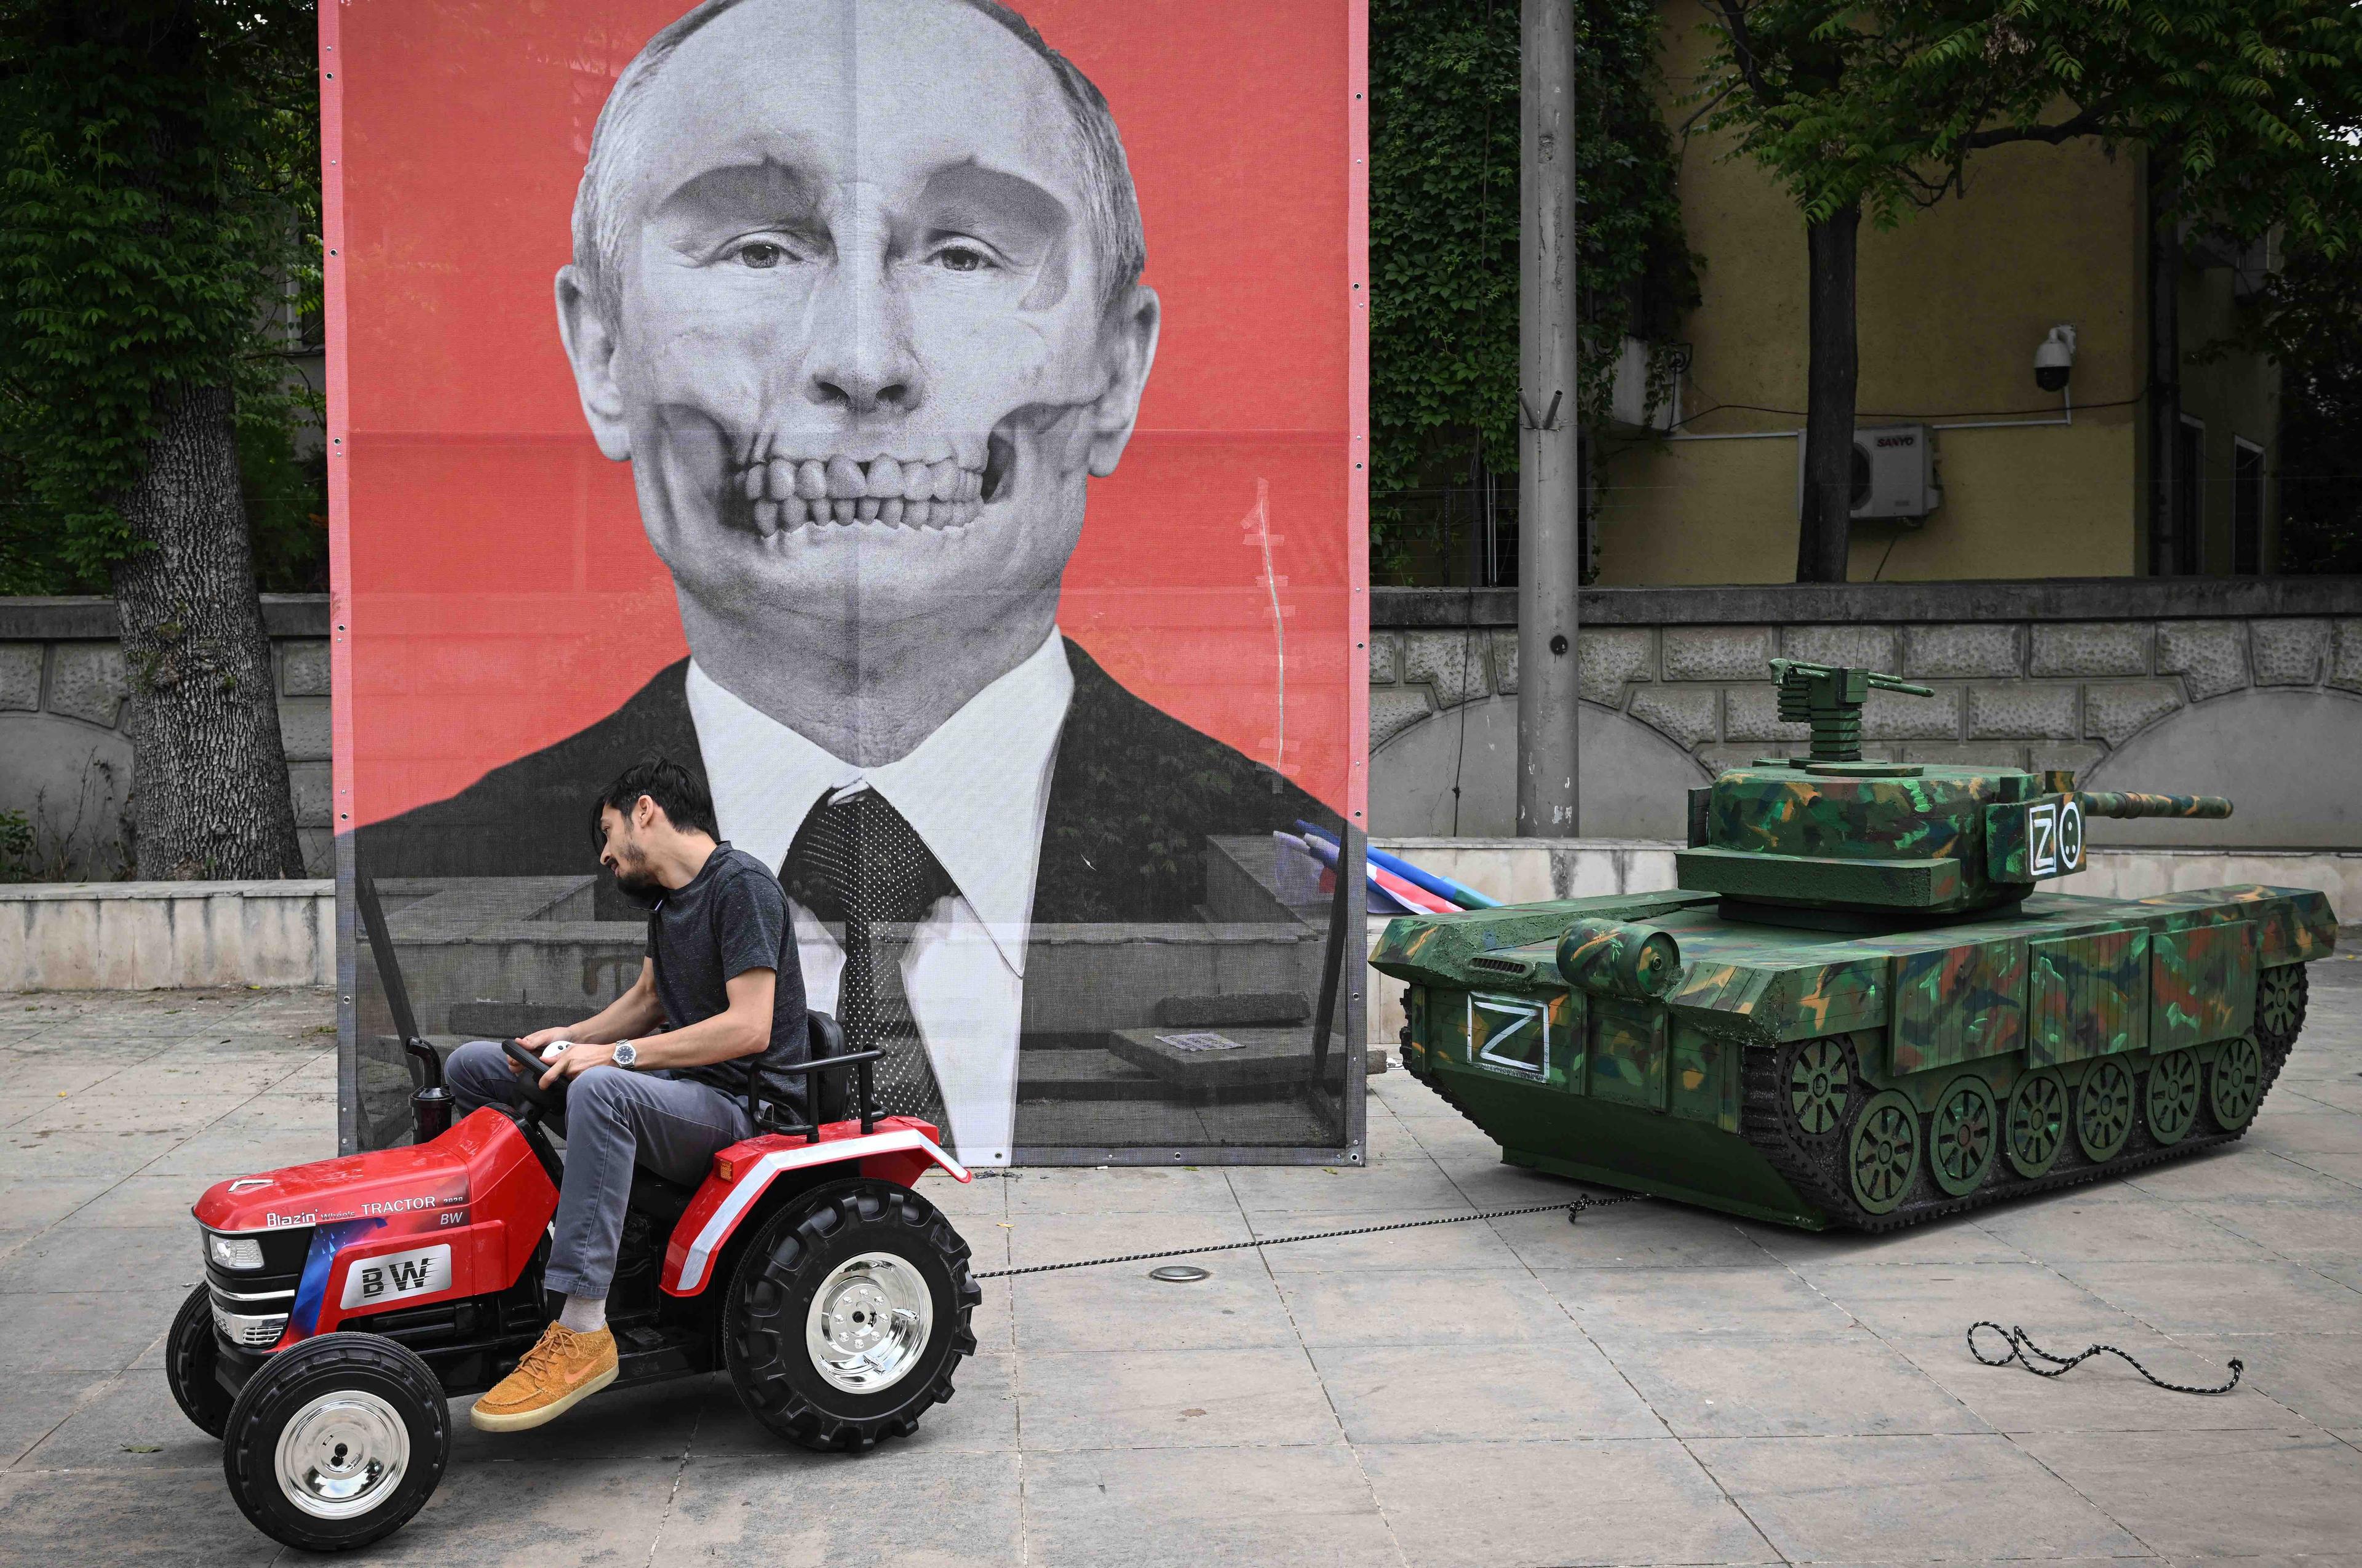 Mężczyzna prowadzi ogrodowy traktor, który ciągnie makietę rosyjskiego czołgu. W tle widać wielki portret Putina, którego twarz przypomina trupią czaszkę.